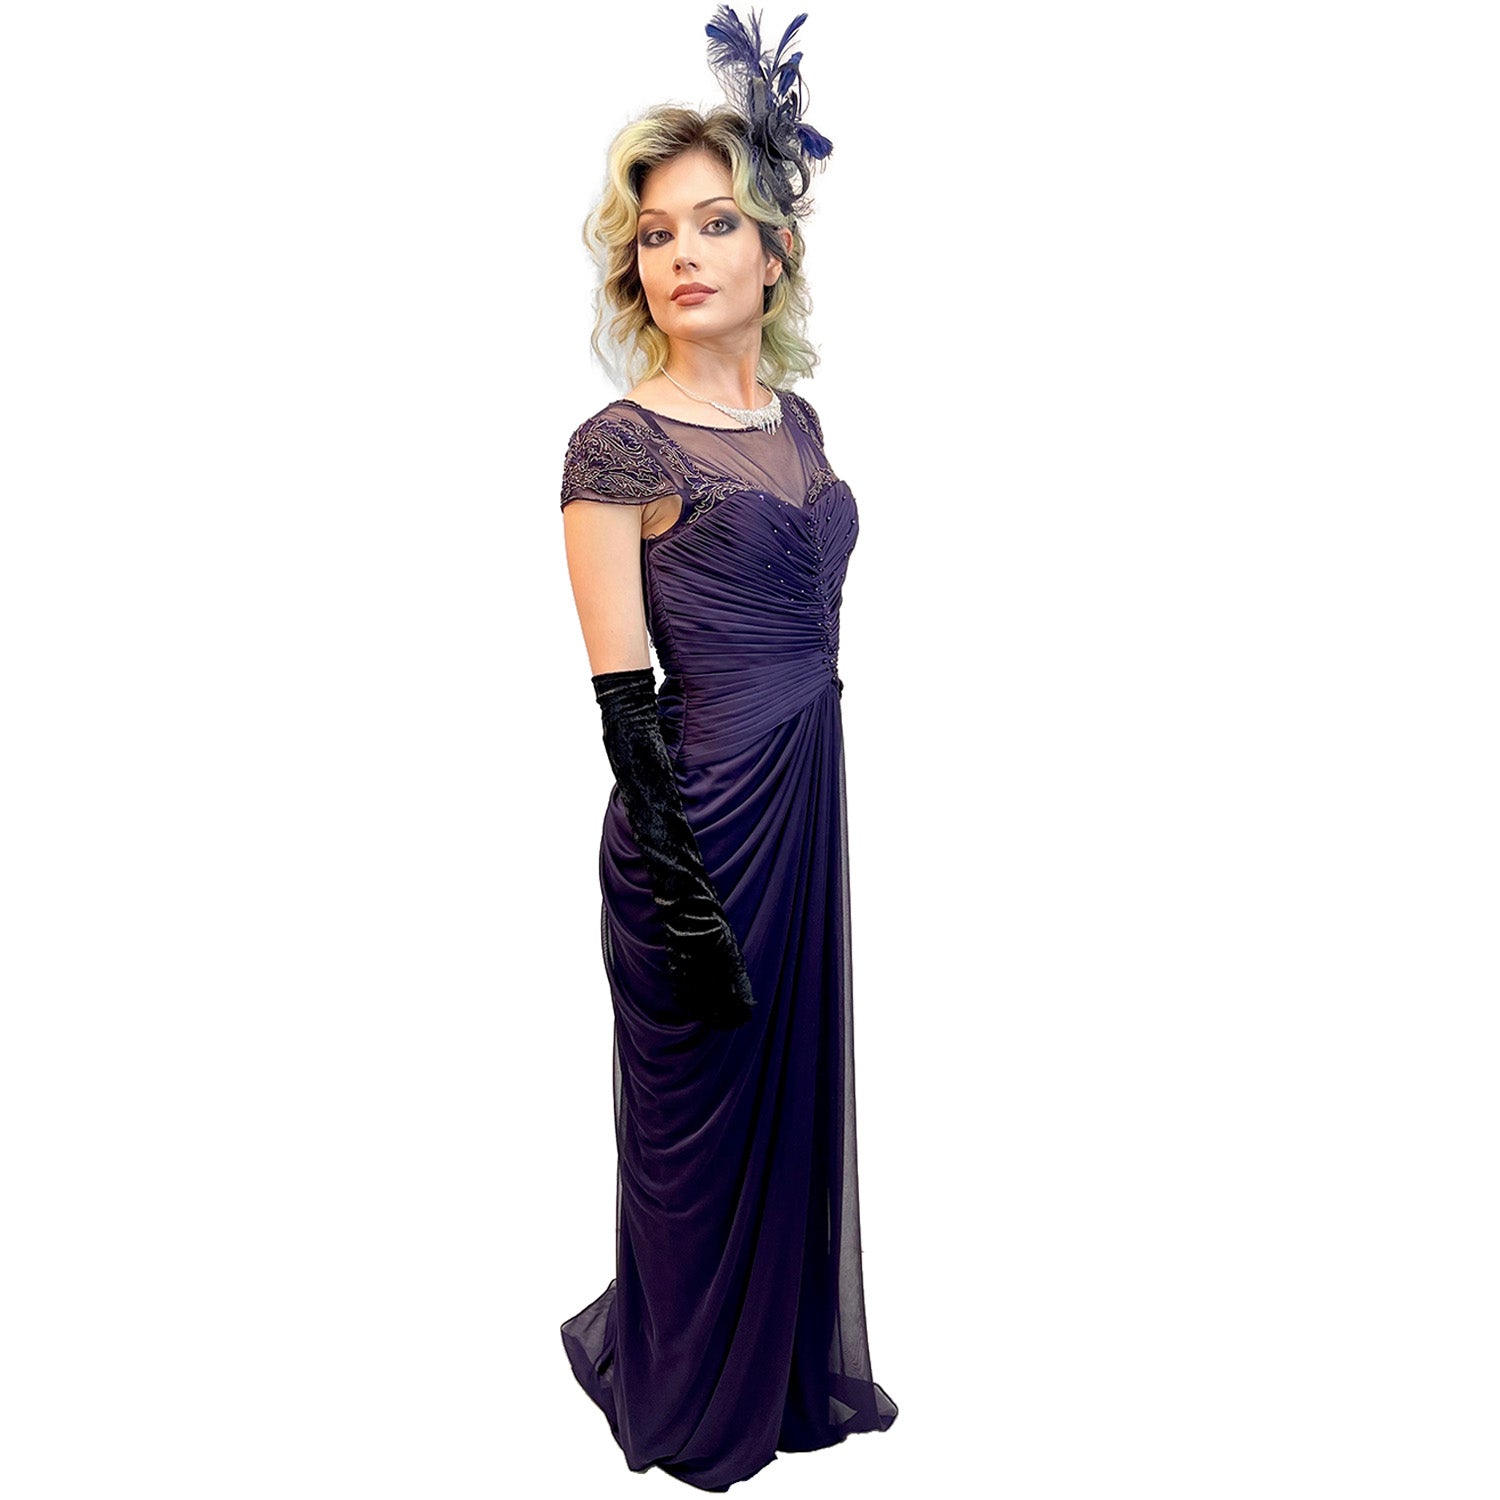 Premiere 1920s Elegant Purple Dress Adult Costume